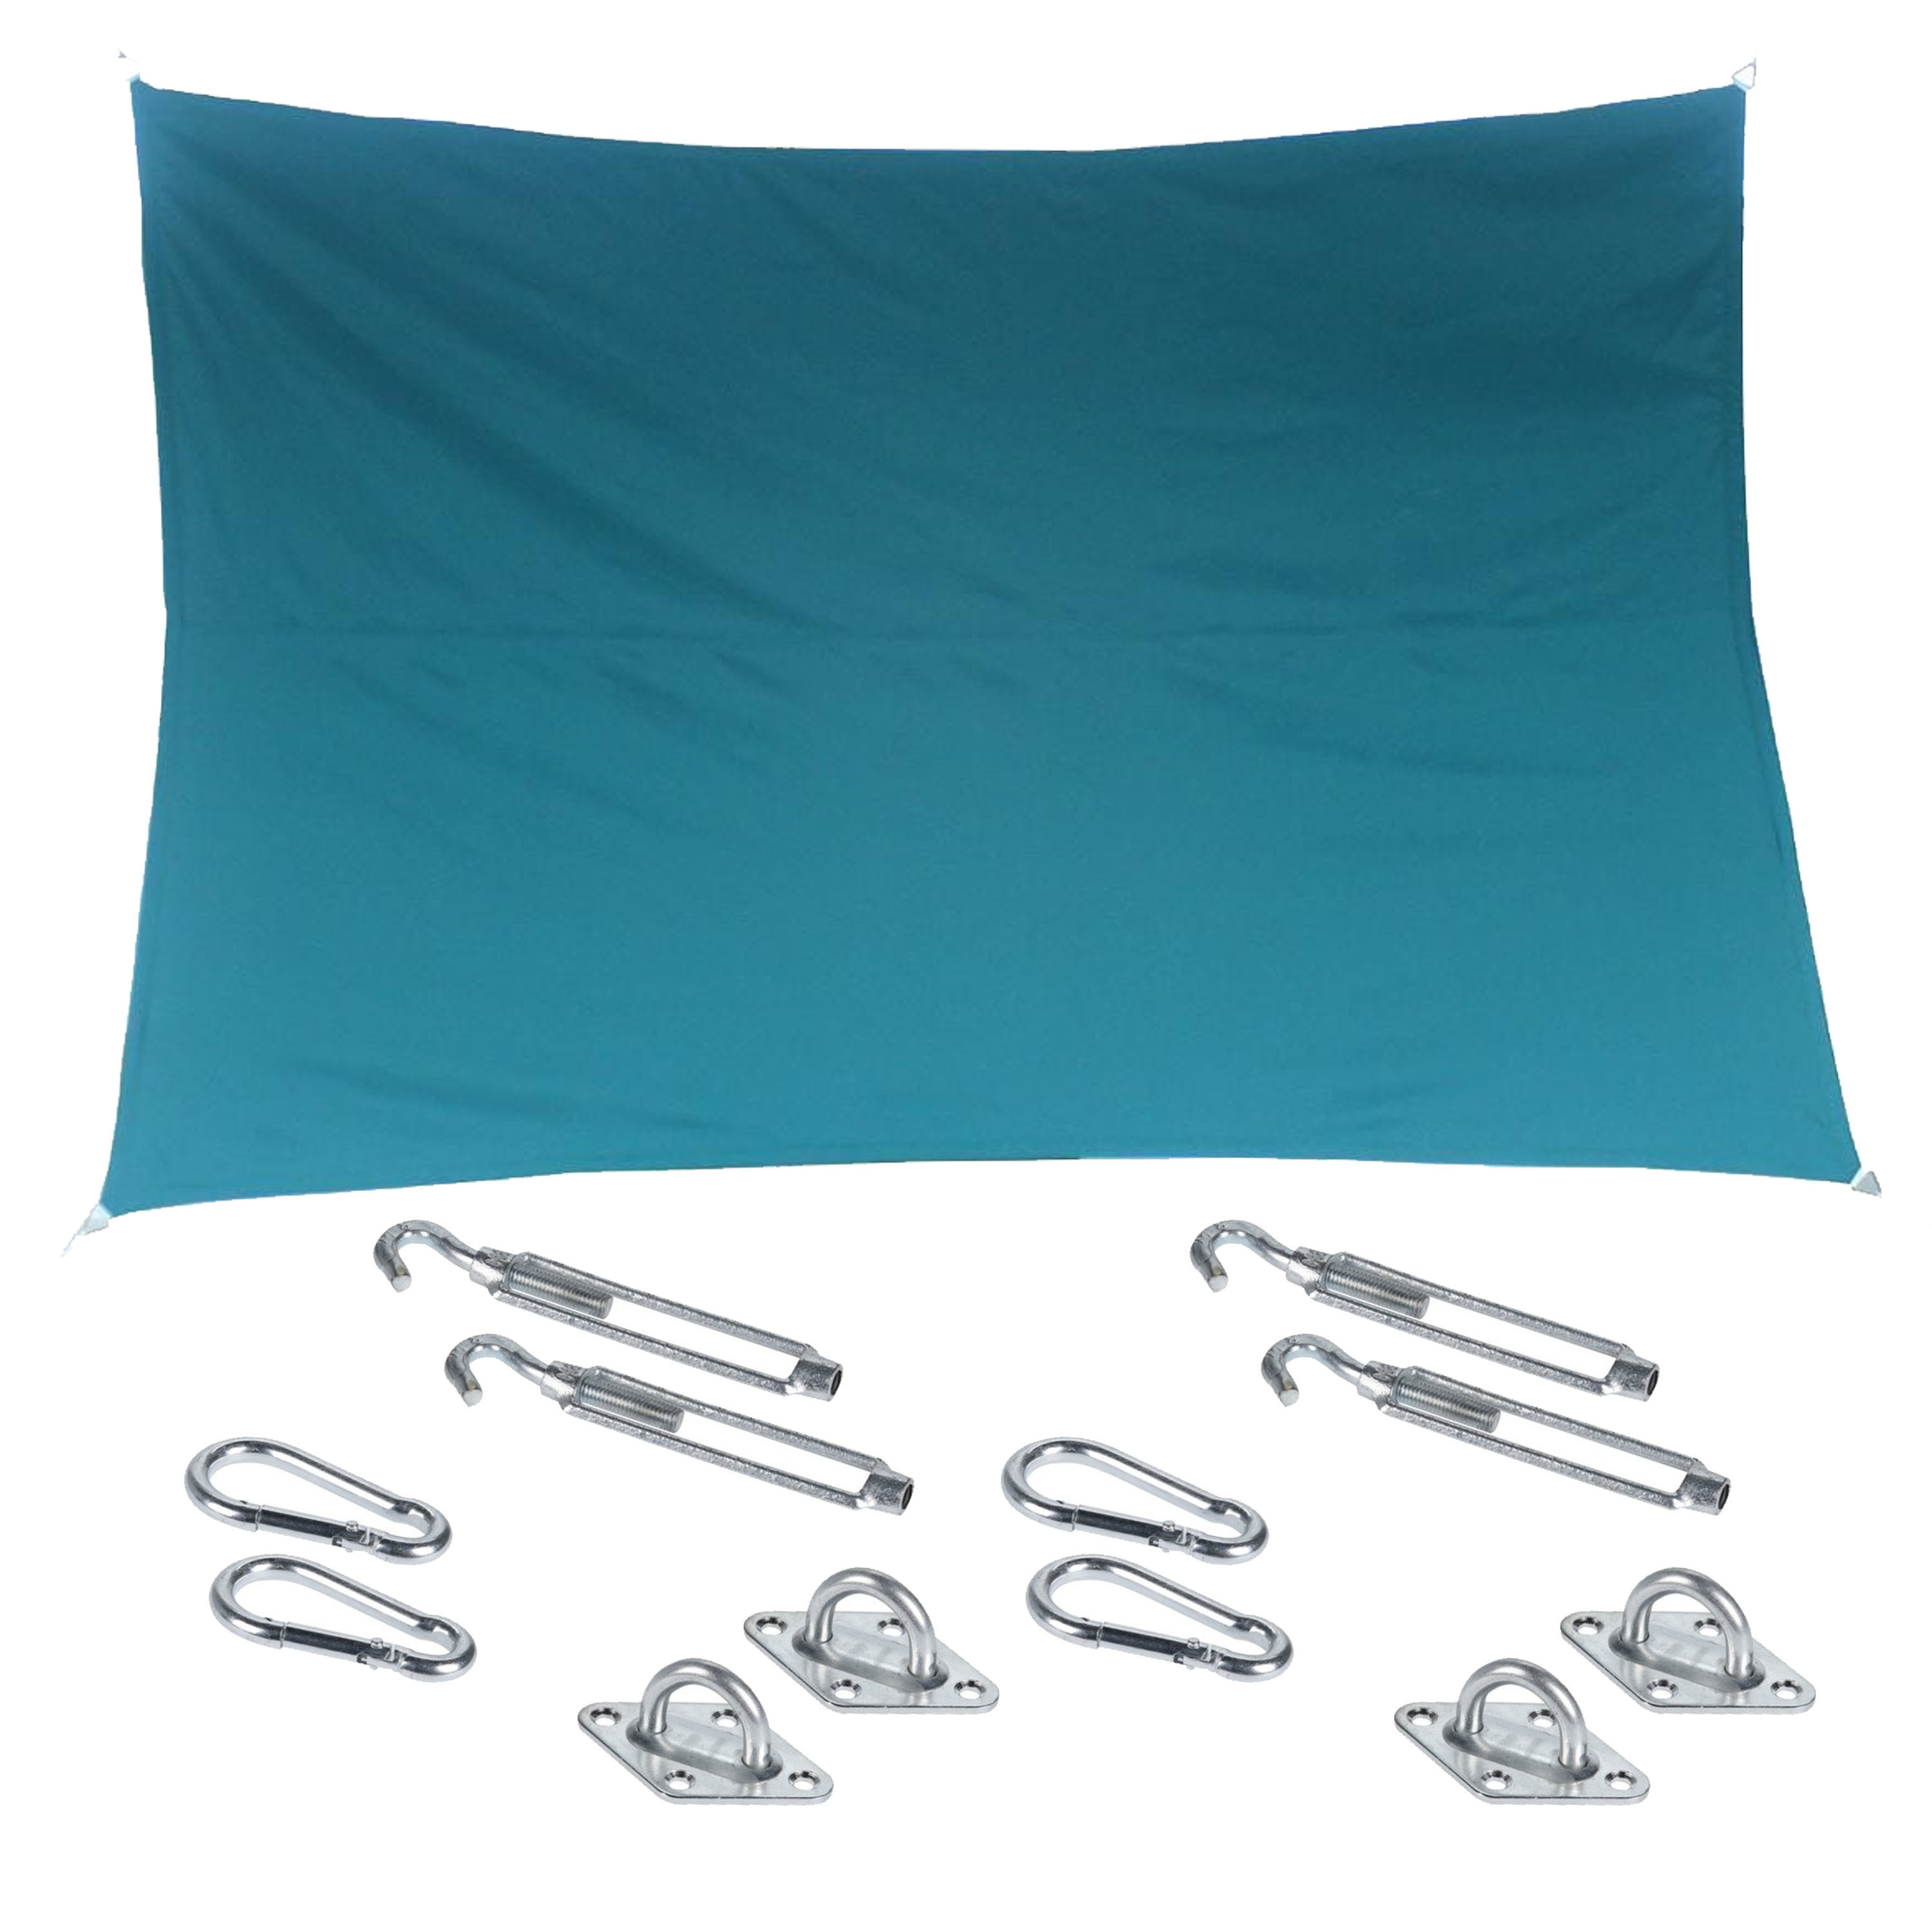 Premium kwaliteit schaduwdoek-zonnescherm Shae rechthoekig blauw 2 x 3 meter met ophanghaken